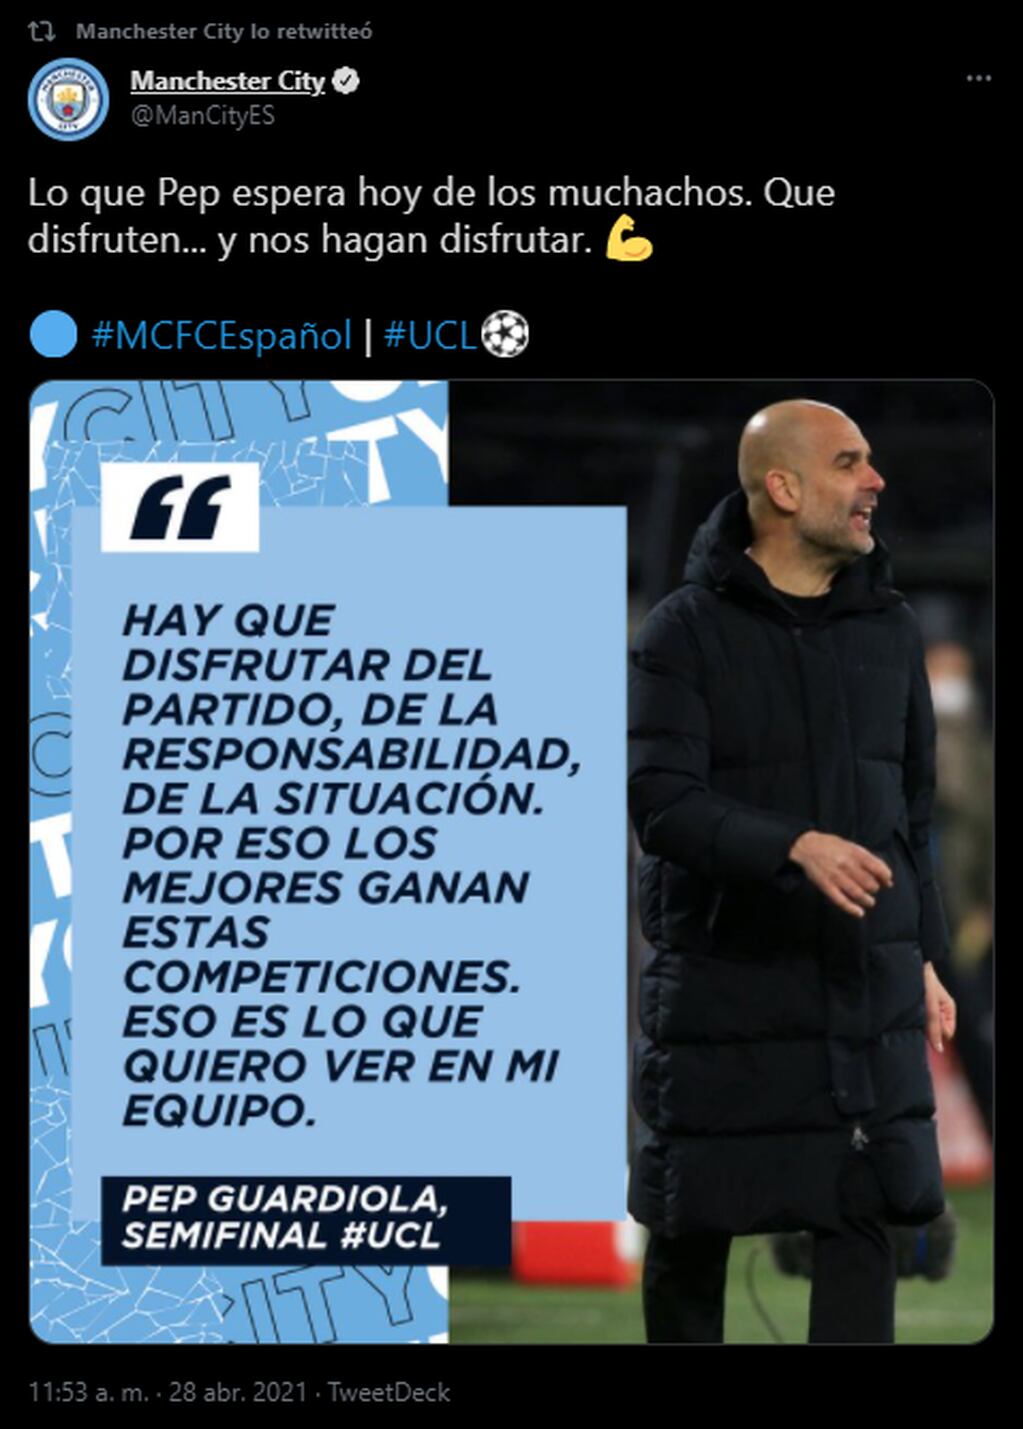 La motivación de Pep Guardiola ante los desafíos internacionales de Champions League.